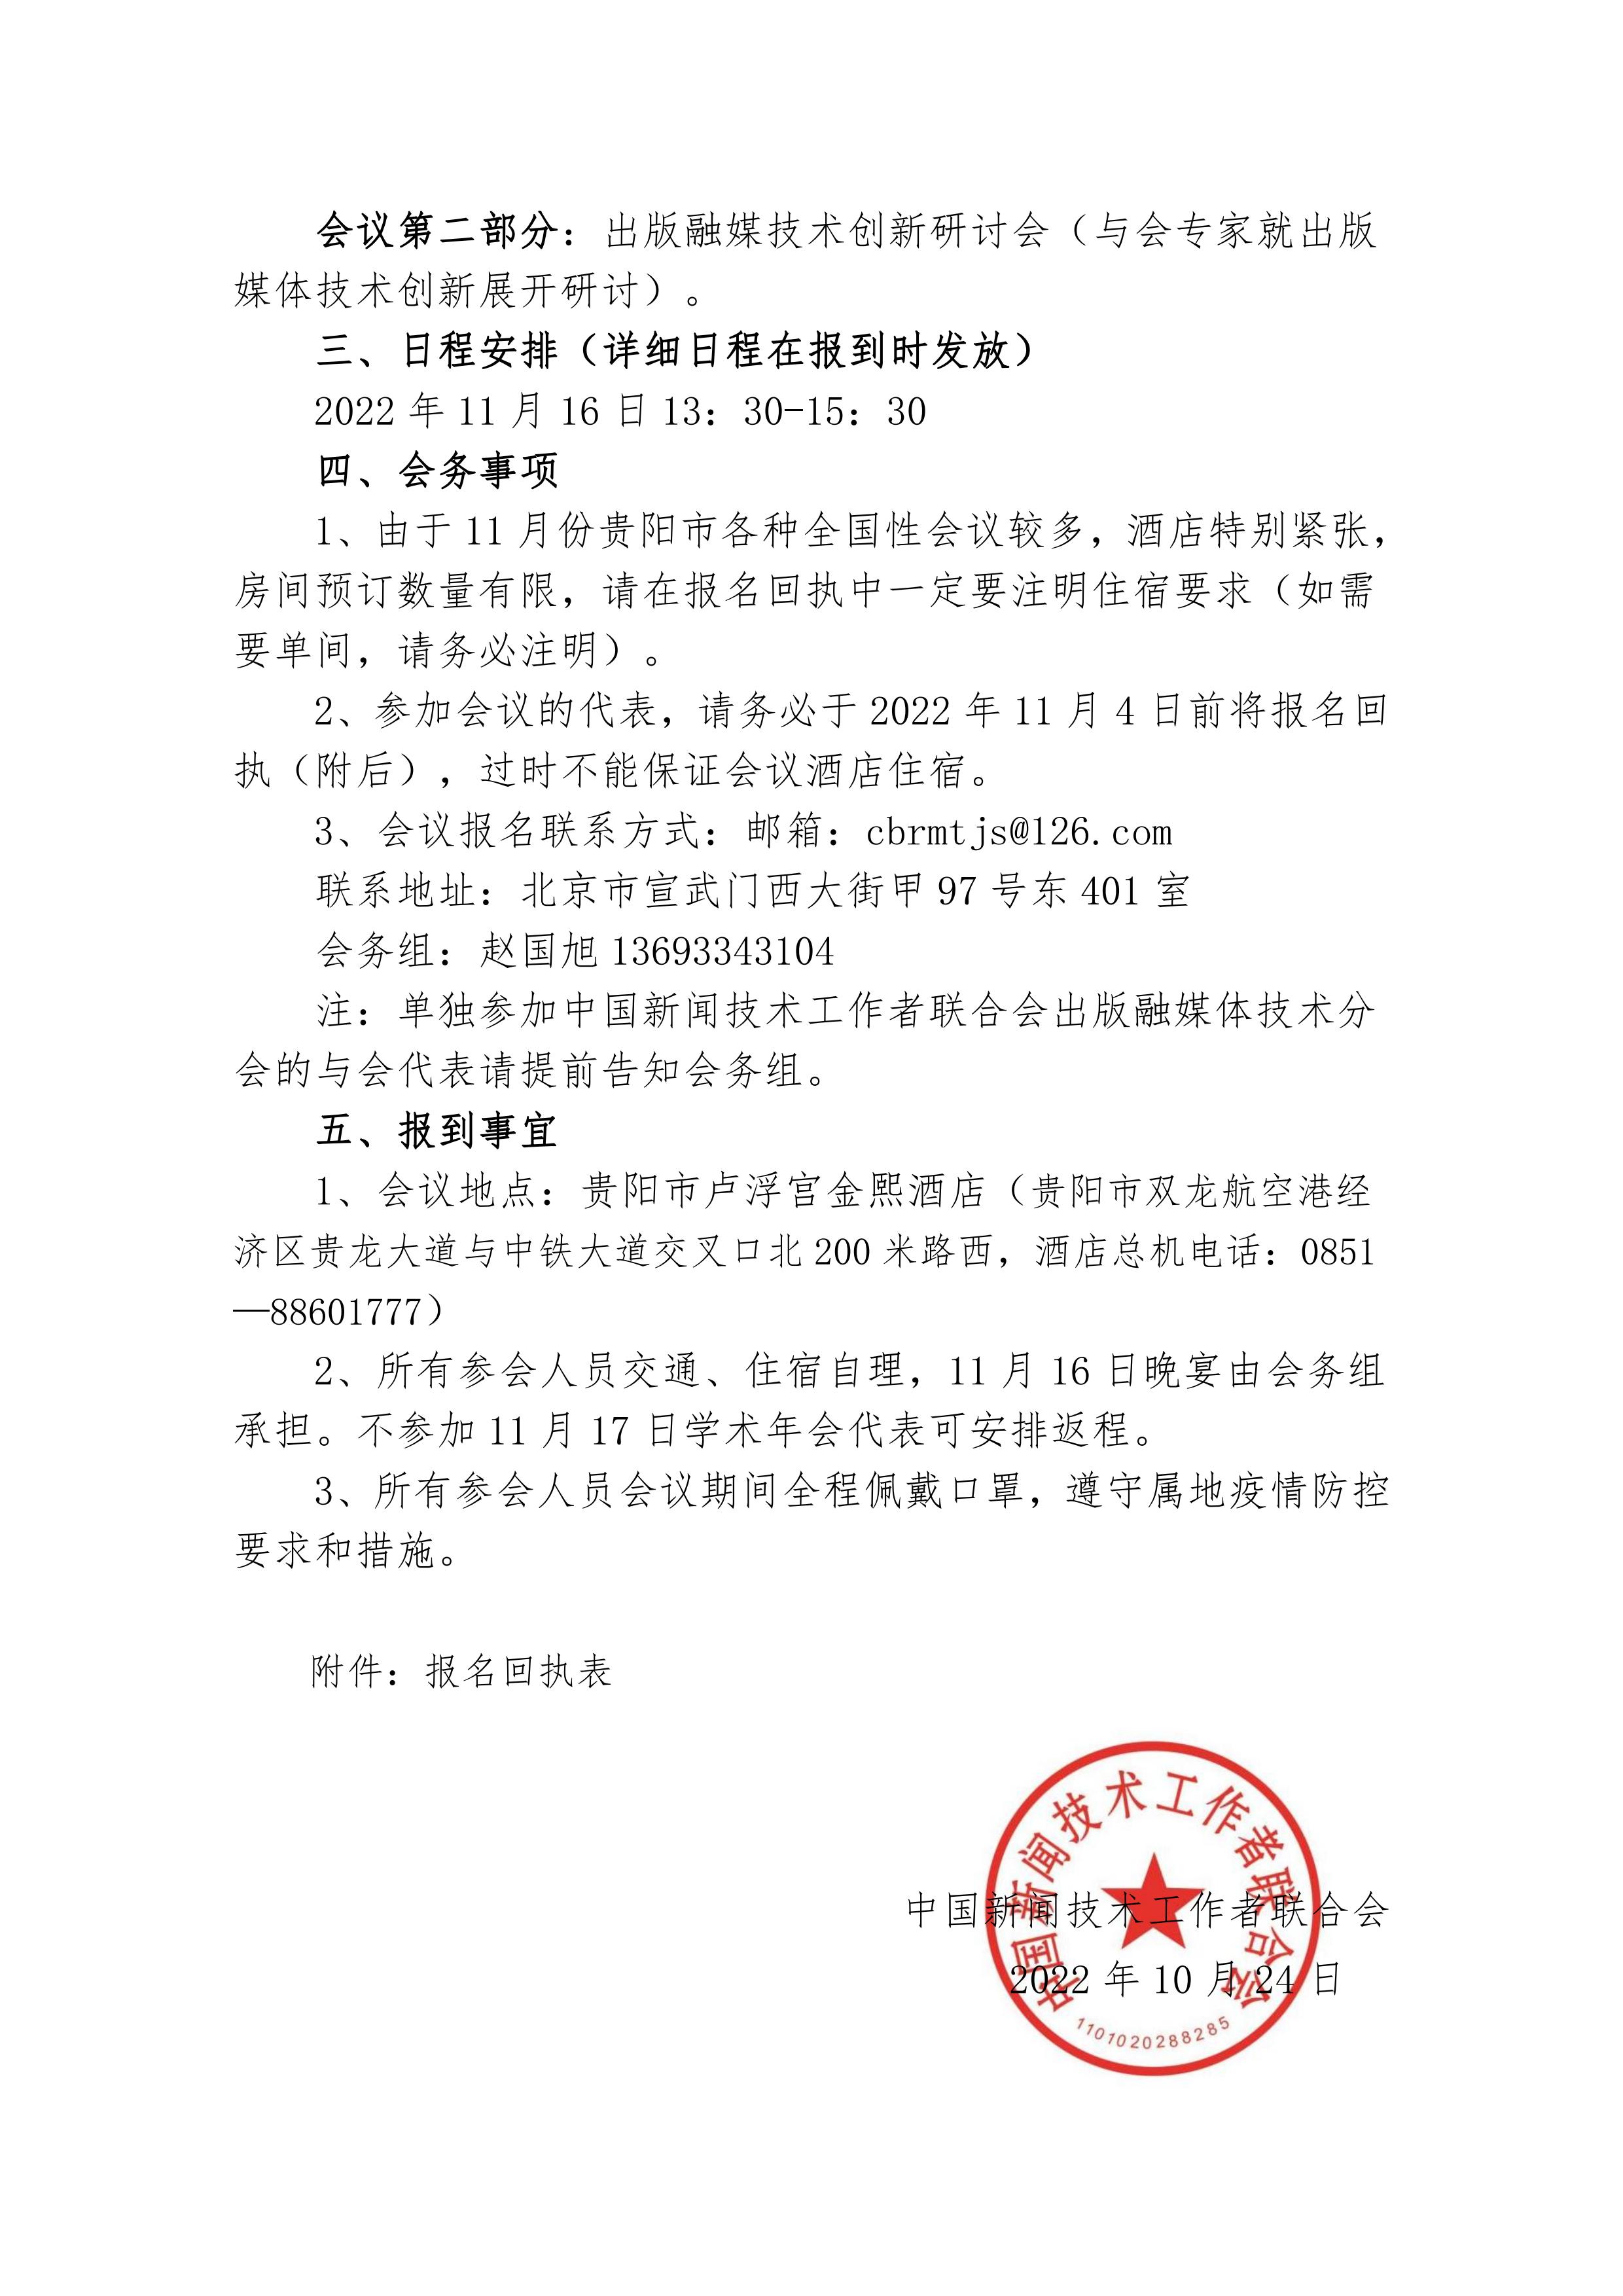 中国新闻技术工作者联合会出版融媒体技术分会第一次会员代表大会邀请函(2022.10.24)_01.jpg